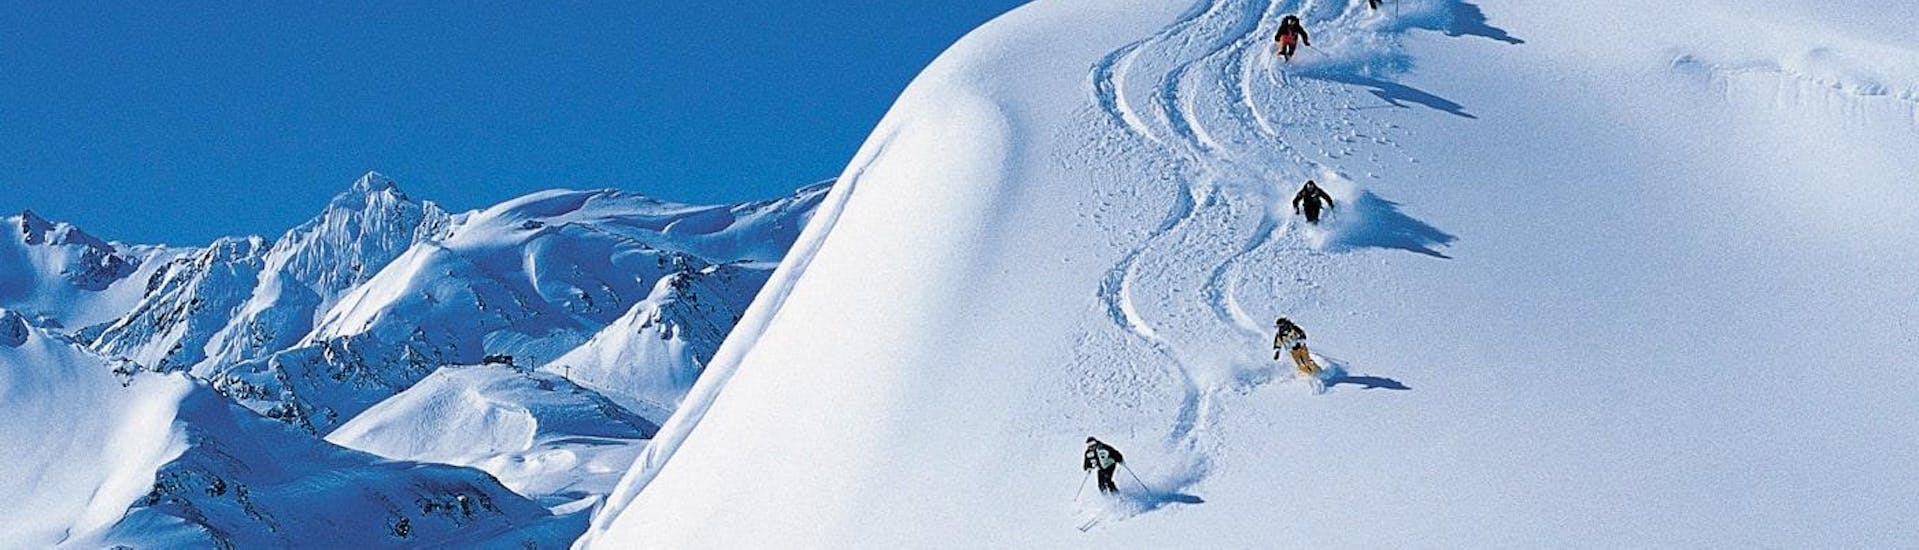 Privé skilessen voor volwassenen vanaf 10 jaar voor alle niveaus.